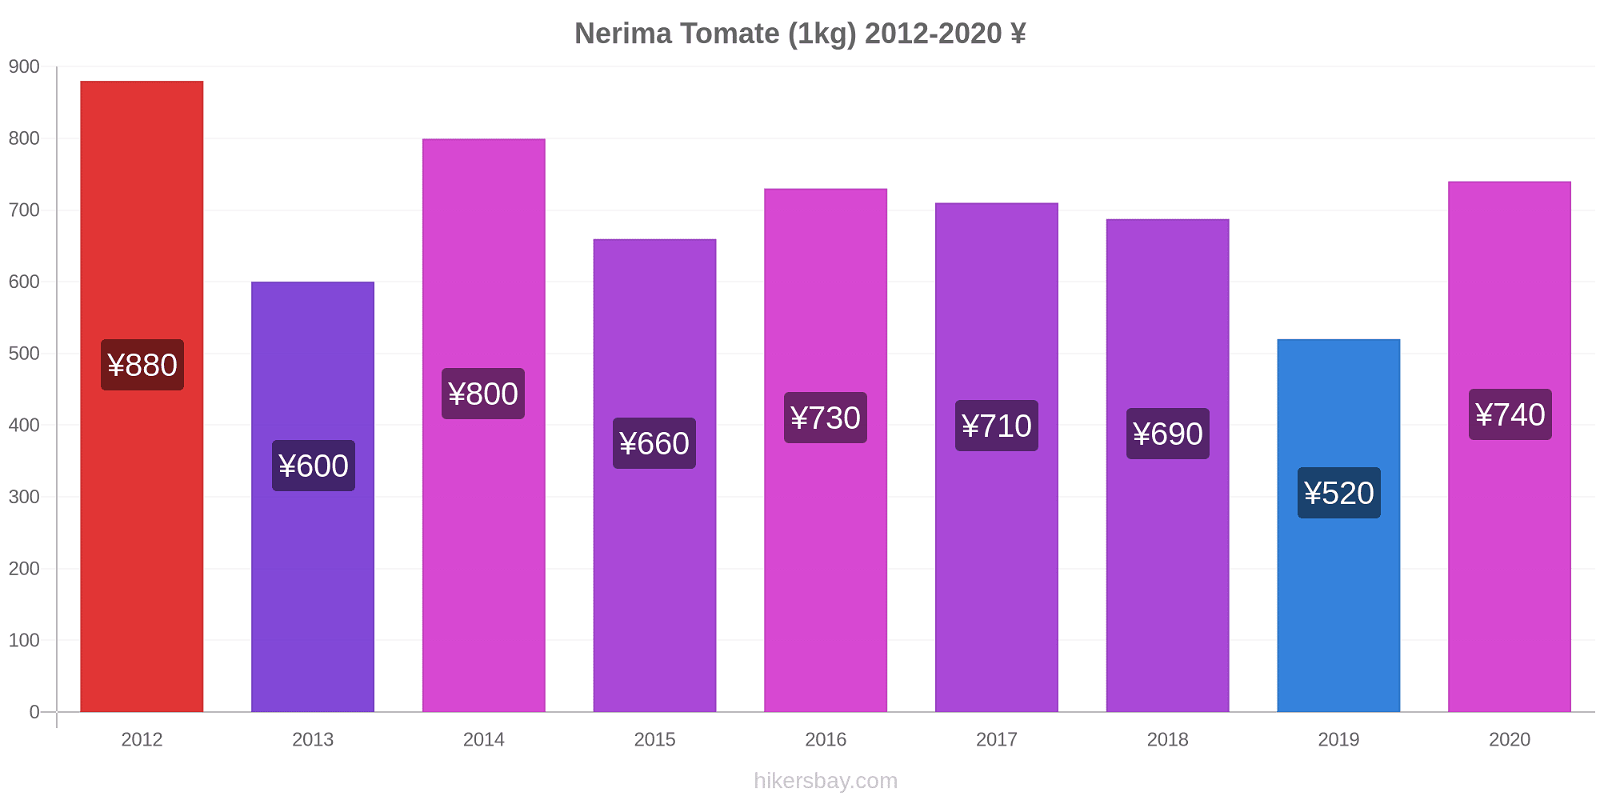 Nerima variação de preço Tomate (1kg) hikersbay.com